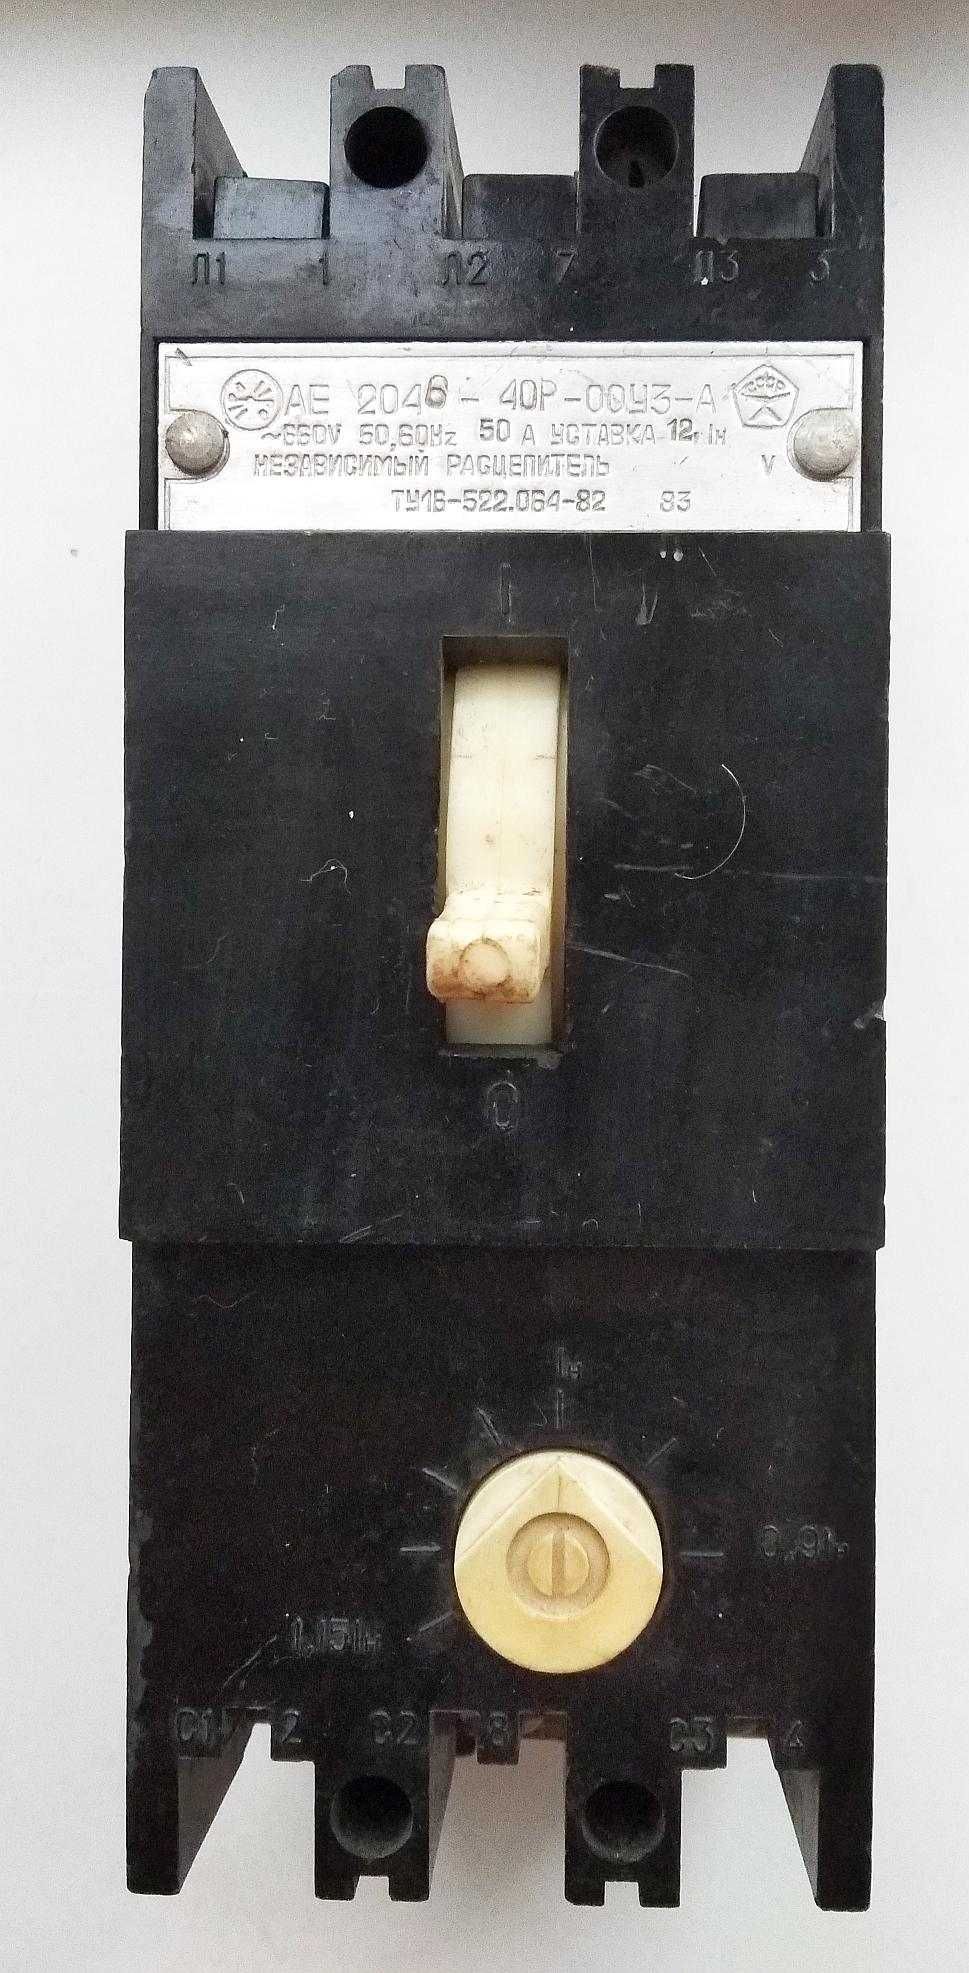 Автоматический выключатель АЕ 2046-40Р-00У3, 50 А, 660 В, ссср 1983